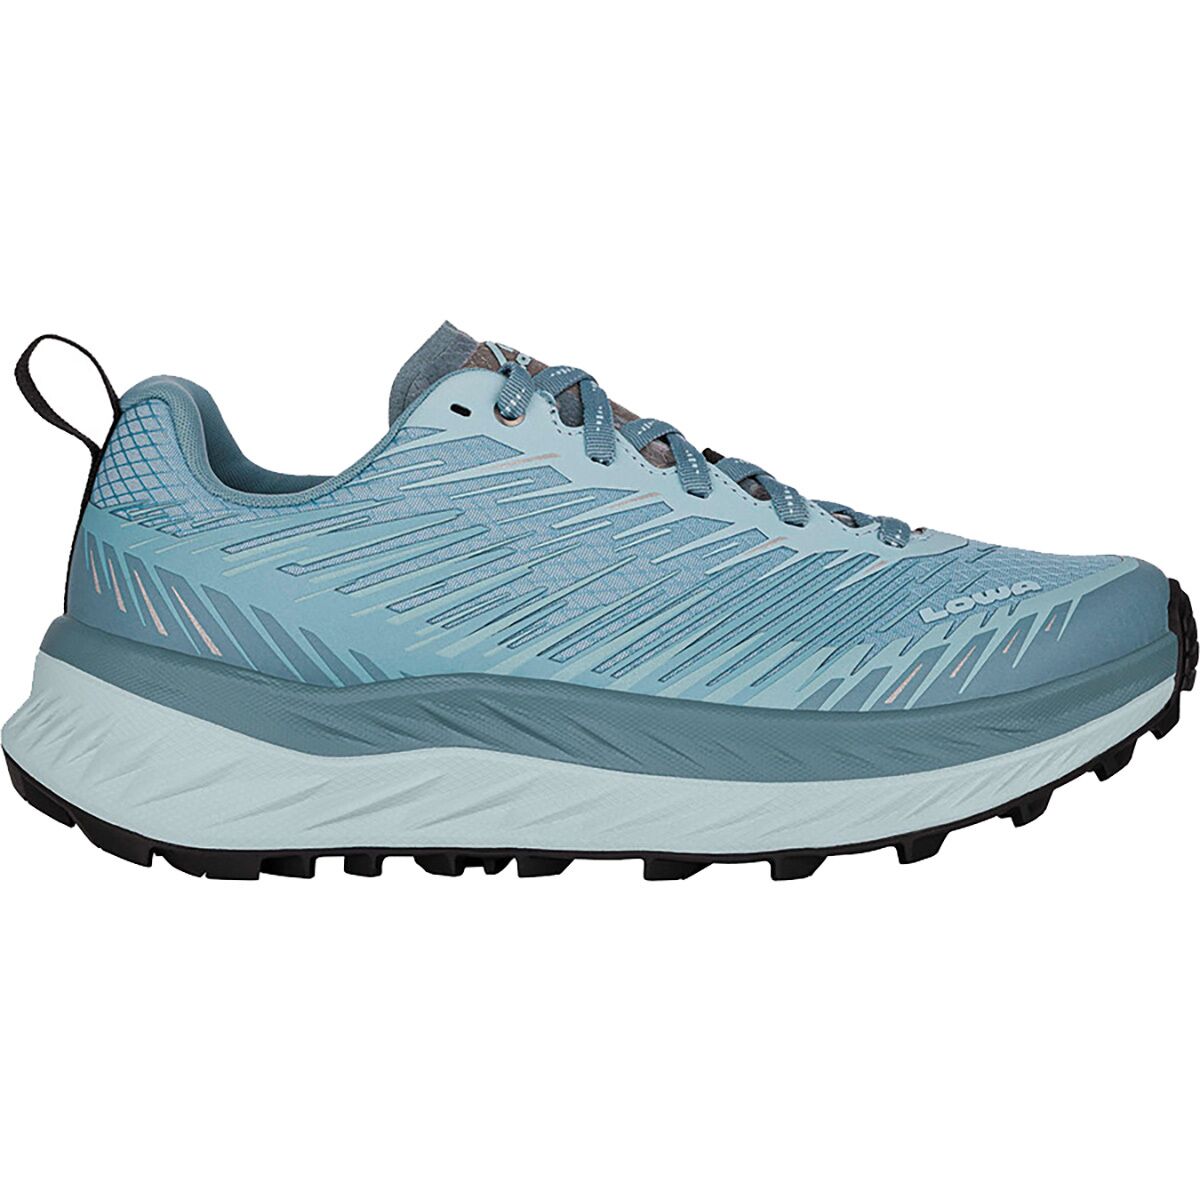 Fortux Trail Running Shoe - Women